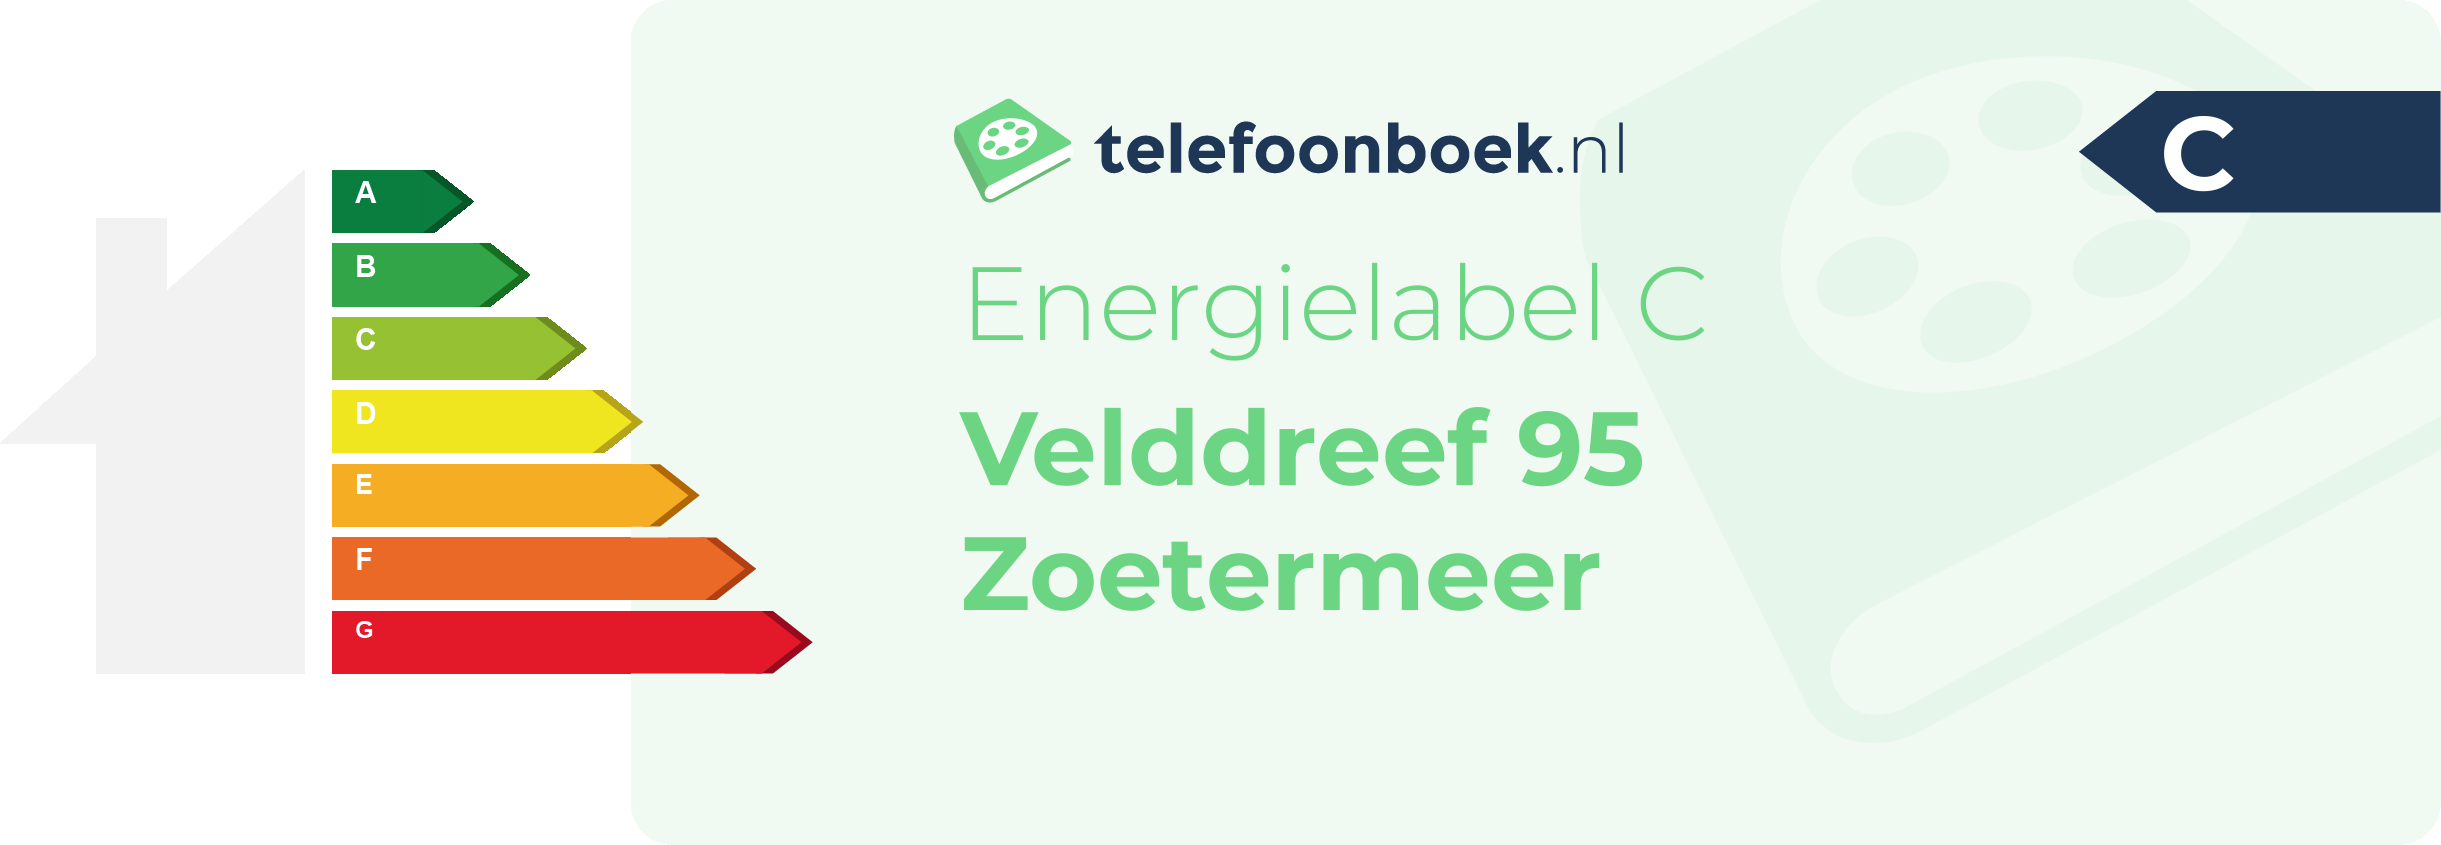 Energielabel Velddreef 95 Zoetermeer